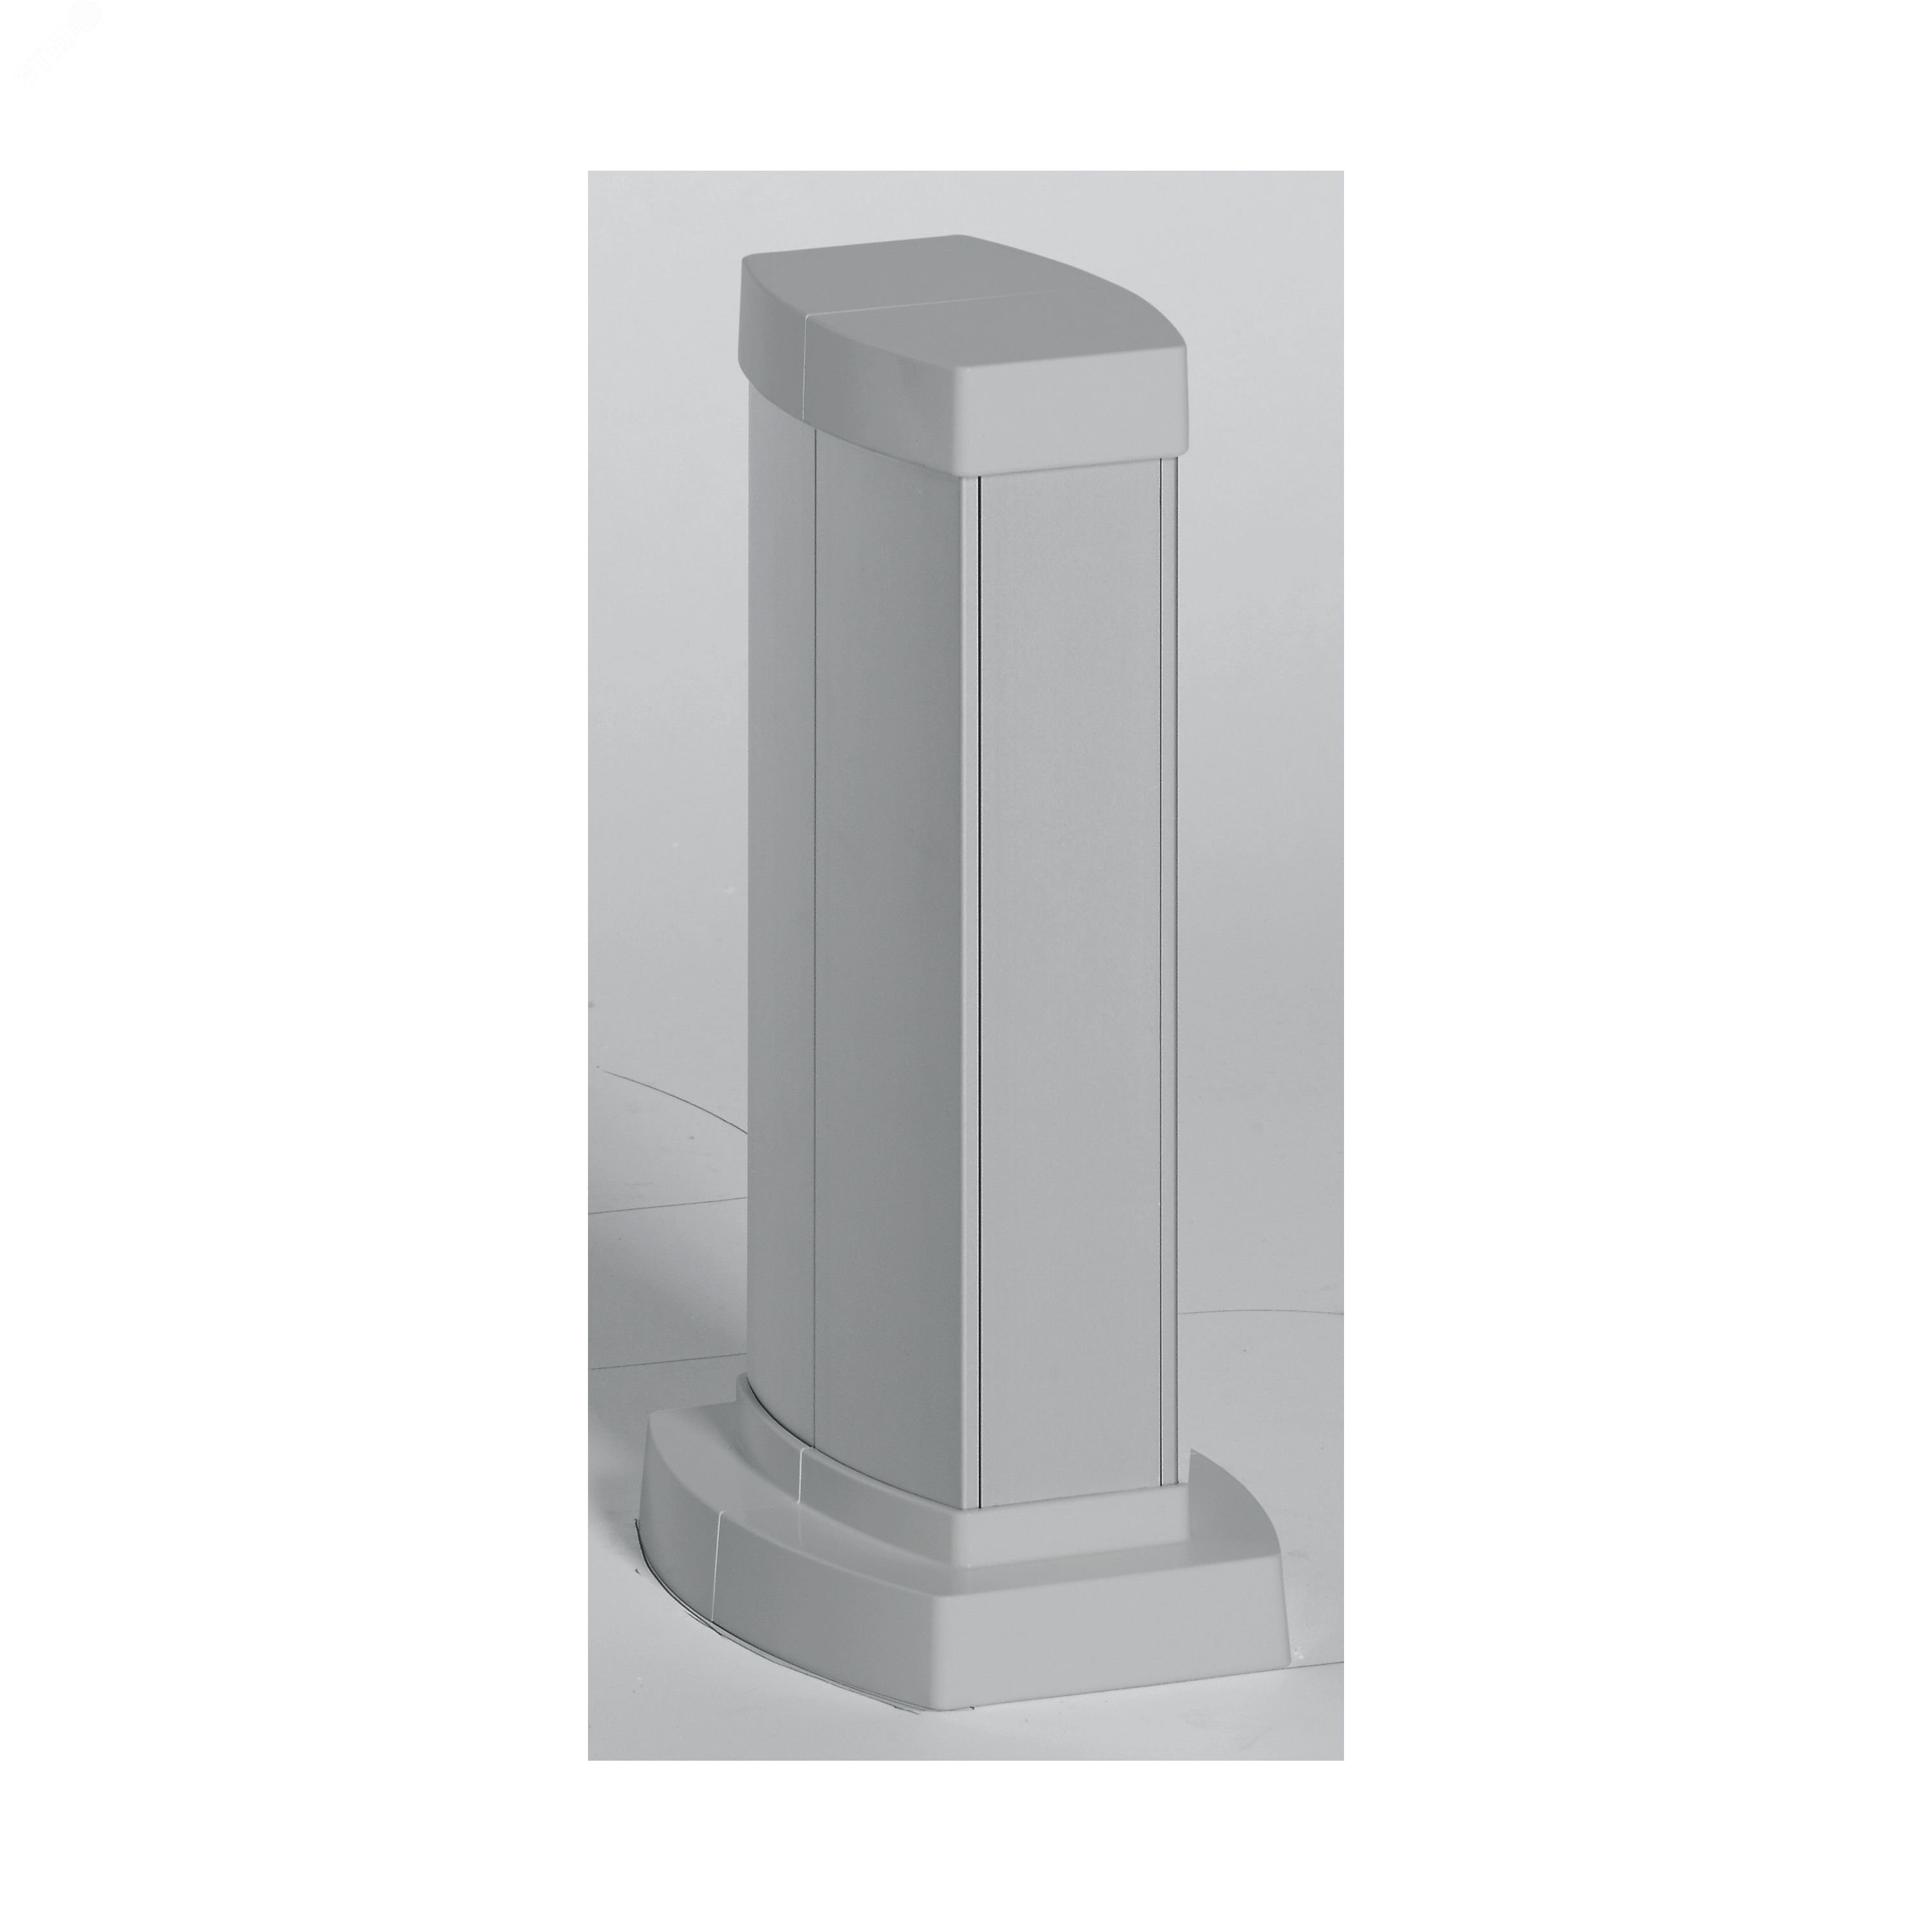 Snap-On мини-колонна алюминиевая с крышкой из алюминия, 2 секции, высота 0,3 метра, цвет алюминий 653021 Legrand - превью 2